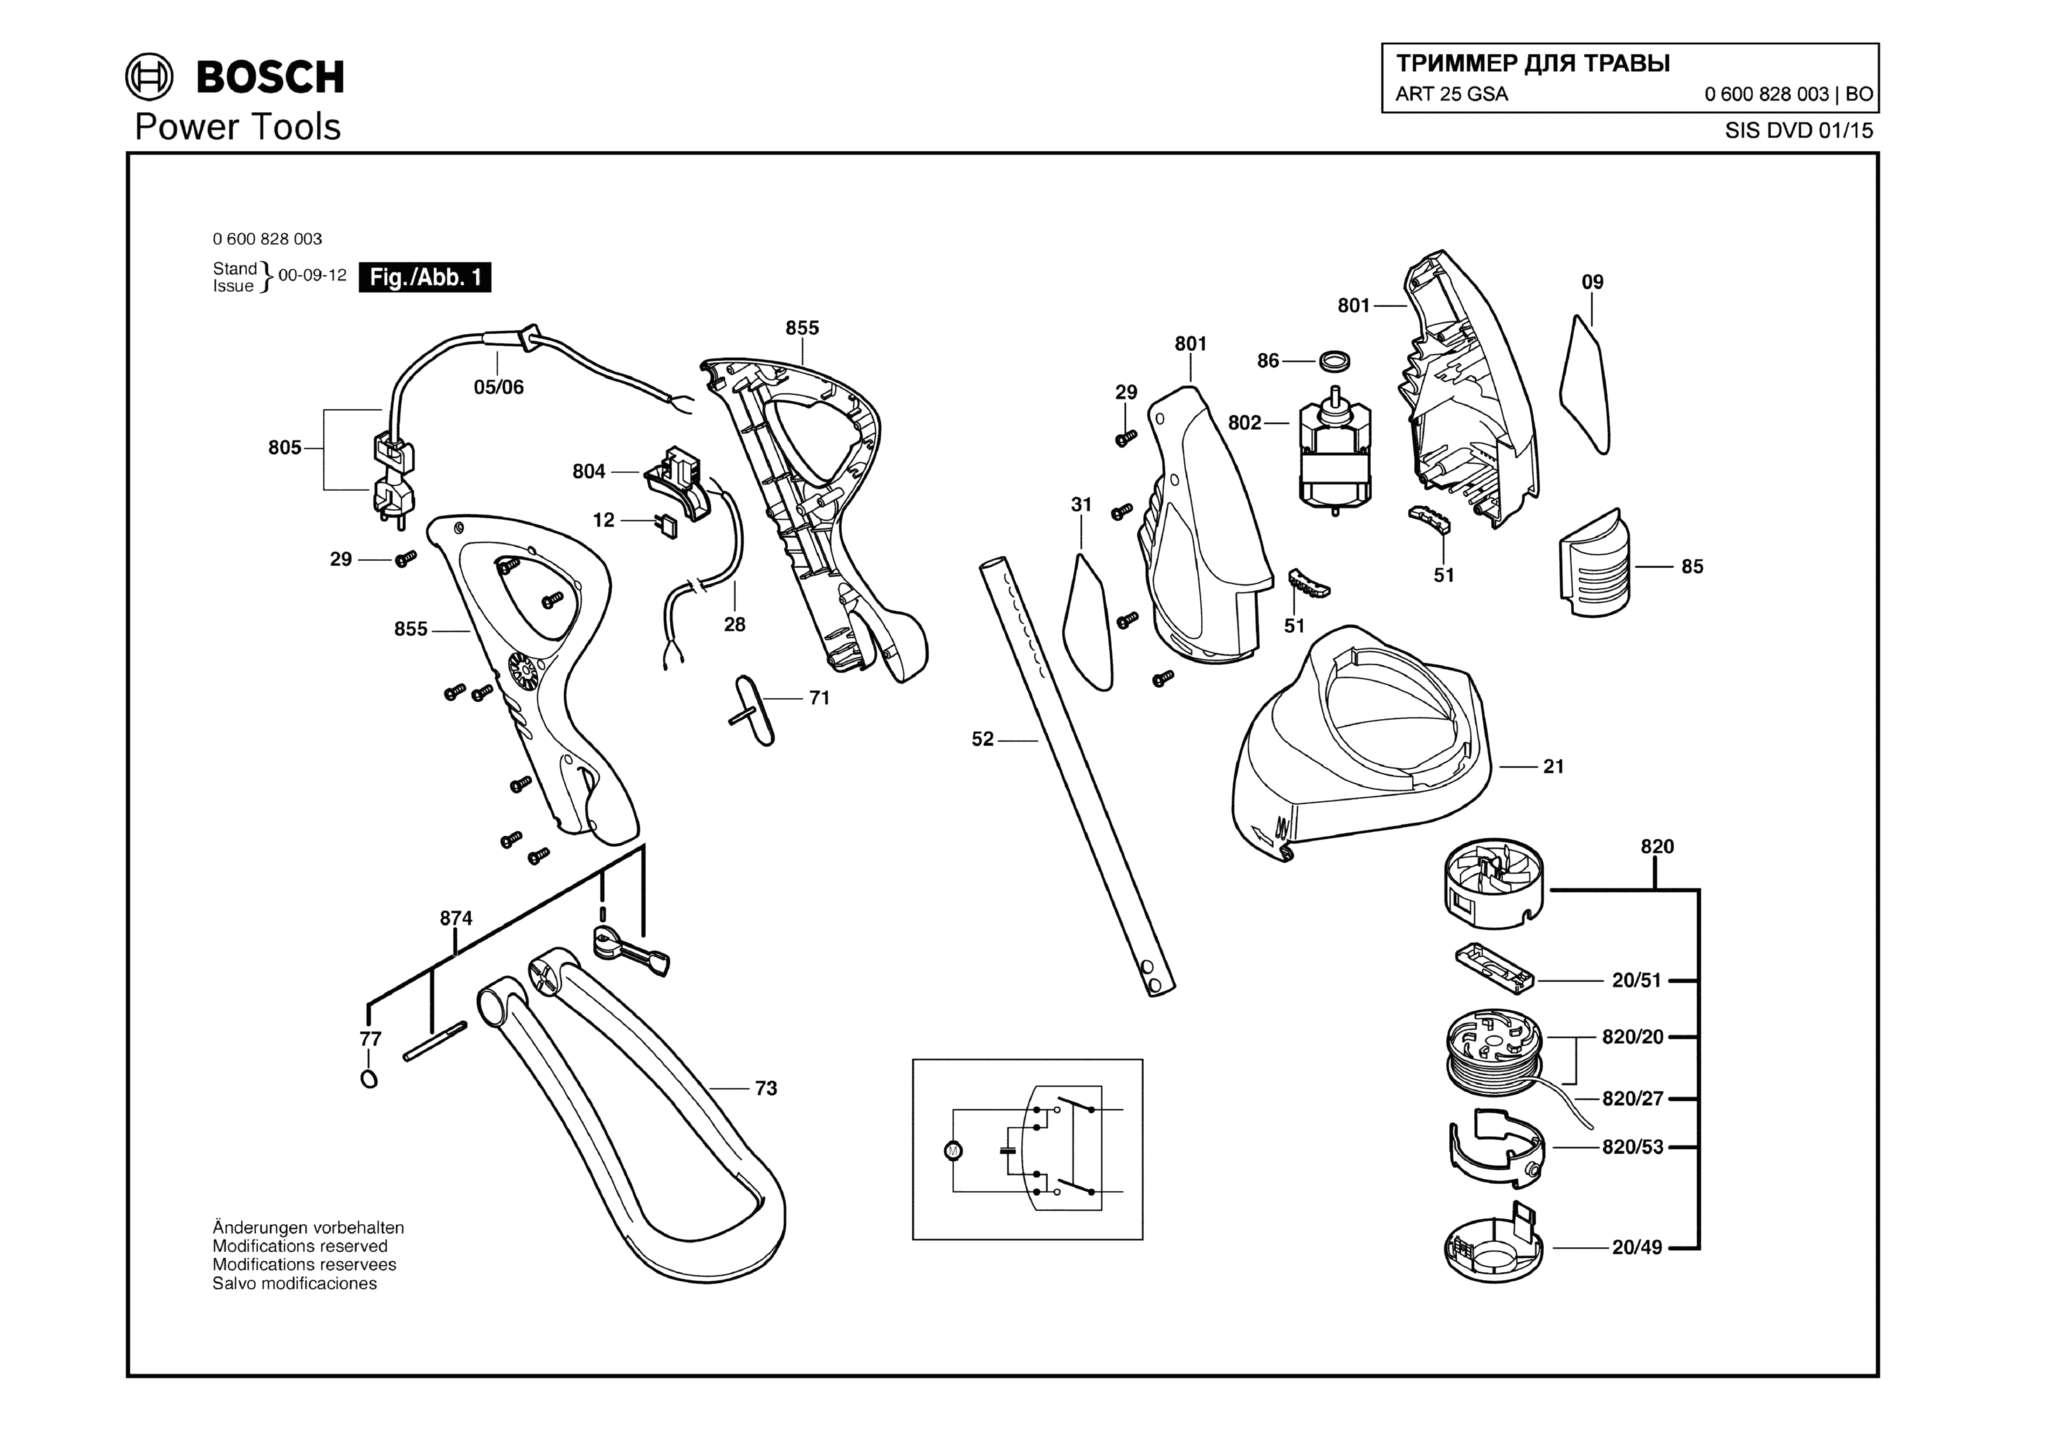 Запчасти, схема и деталировка Bosch ART 25 GSA (ТИП 0600828003)